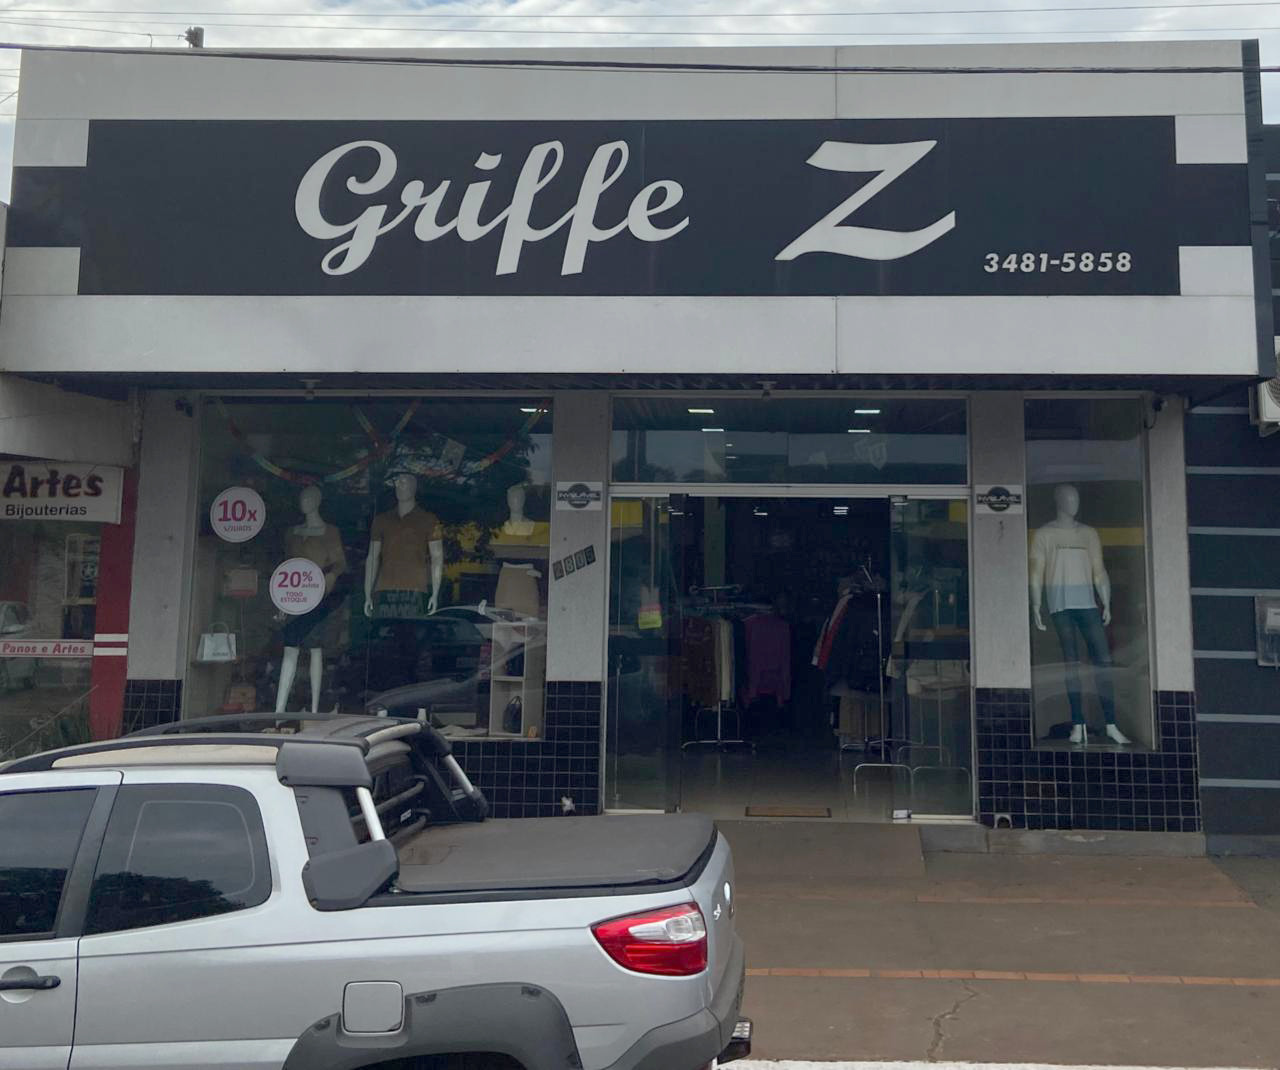 GRIFFE Z prepara promoção com preços e prazos especiais